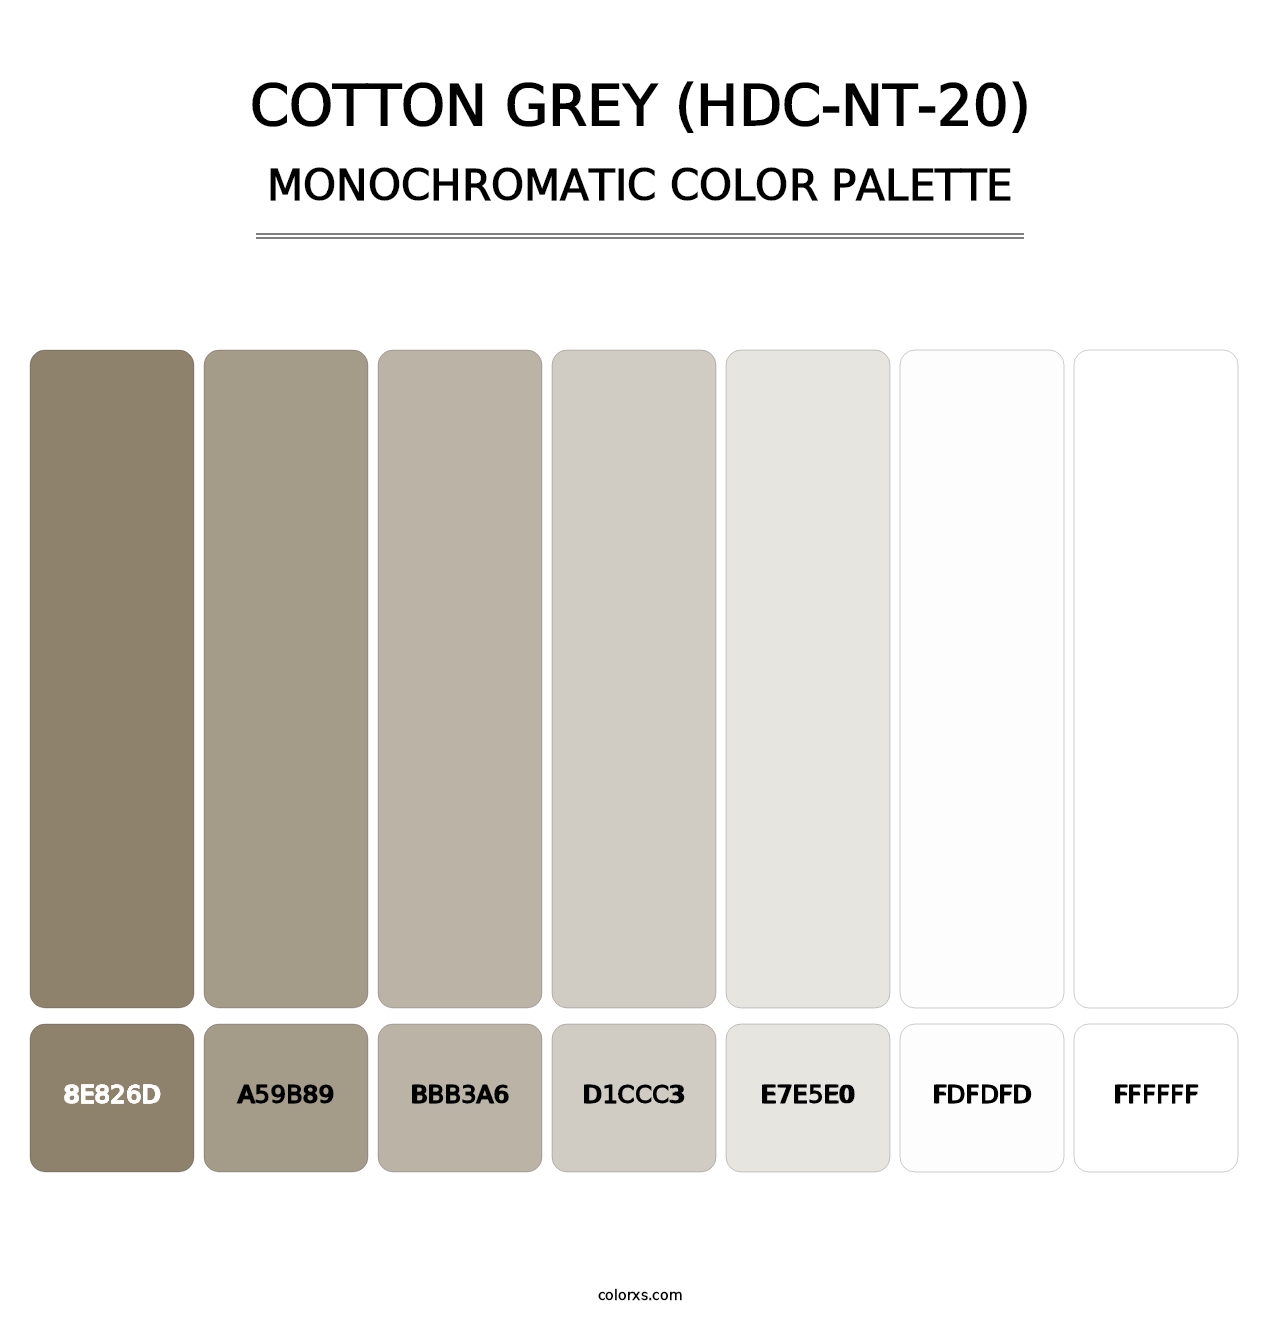 Cotton Grey (HDC-NT-20) - Monochromatic Color Palette